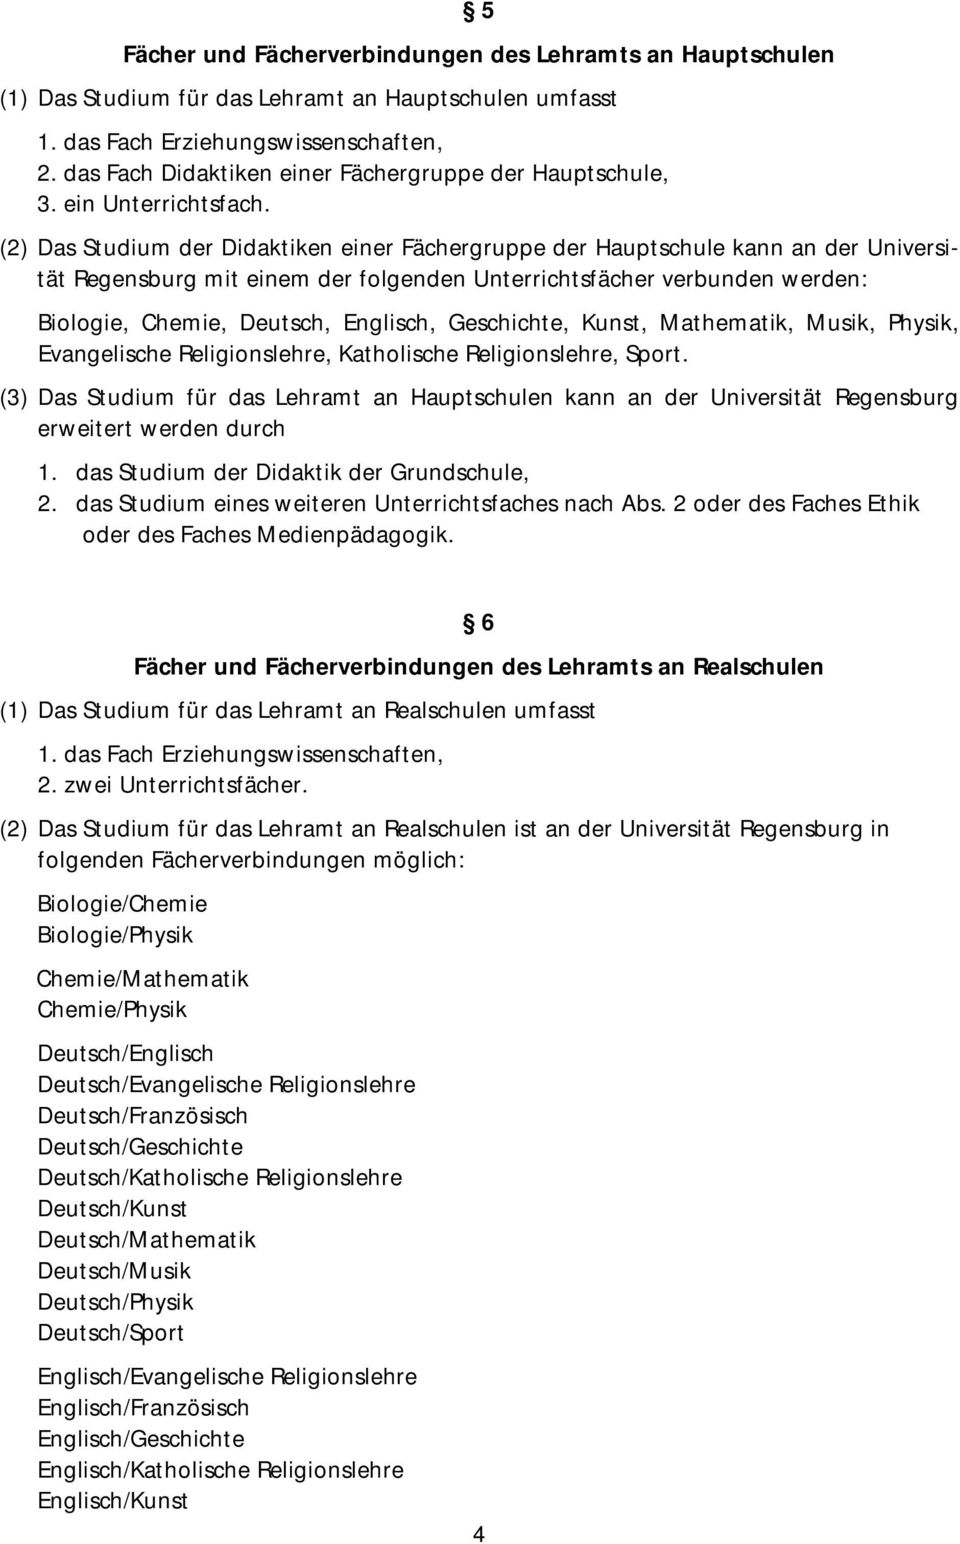 (2) Das Studium der Didaktiken einer Fächergruppe der Hauptschule kann an der Universität Regensburg mit einem der folgenden Unterrichtsfächer verbunden werden: Biologie, Chemie, Deutsch, Englisch,